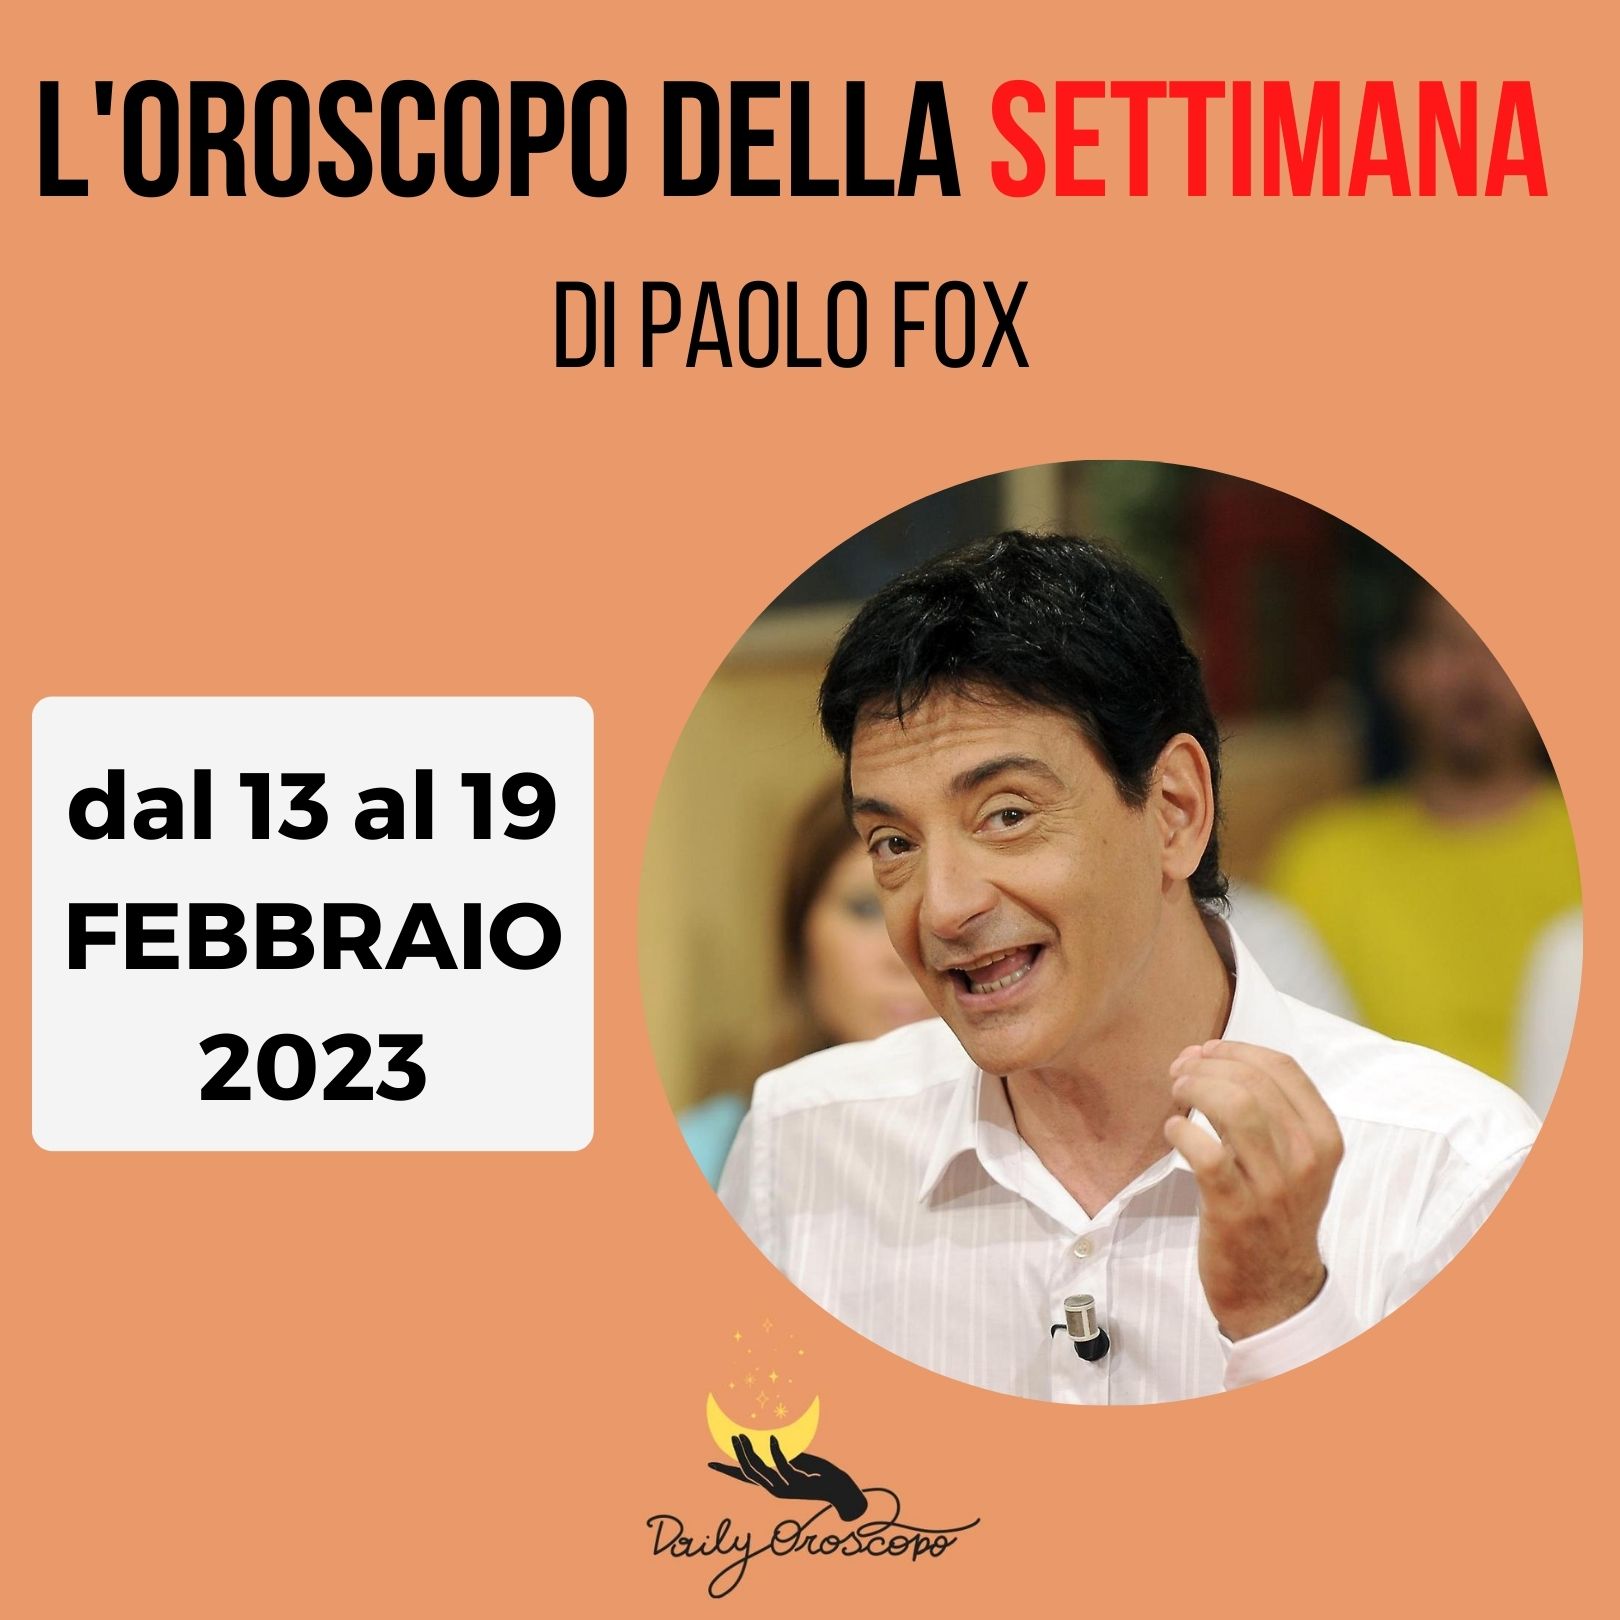 Oroscopo settimanale Paolo Fox 13 19 febbraio 2023